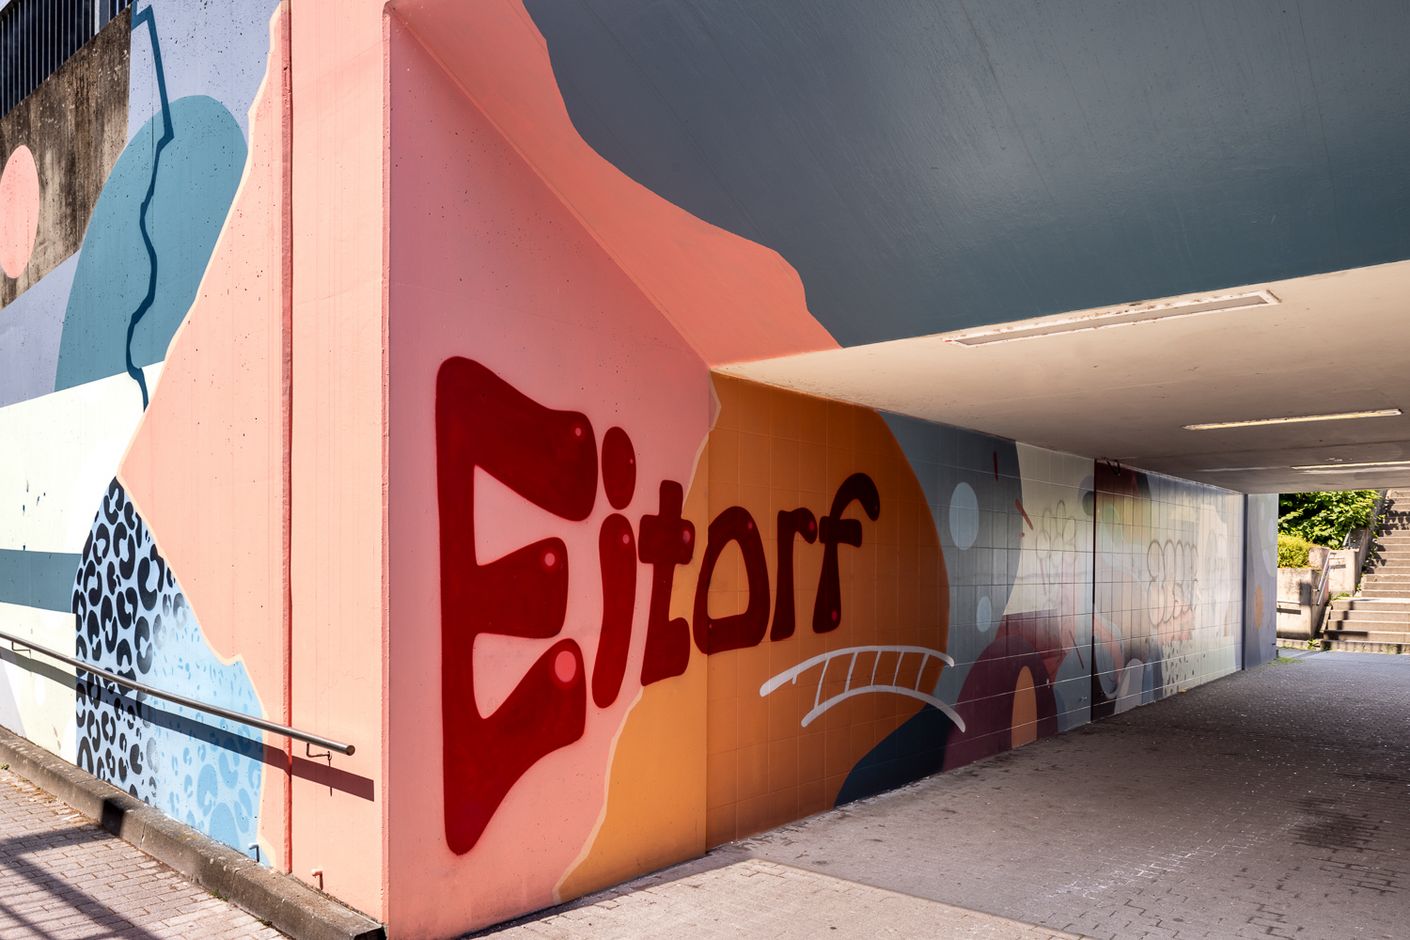 Wir sehen eine Bildergalerie mit zahlreichen Impressionen des Bahnhof Eitorf nach seiner künstlerischen Umgestaltung.